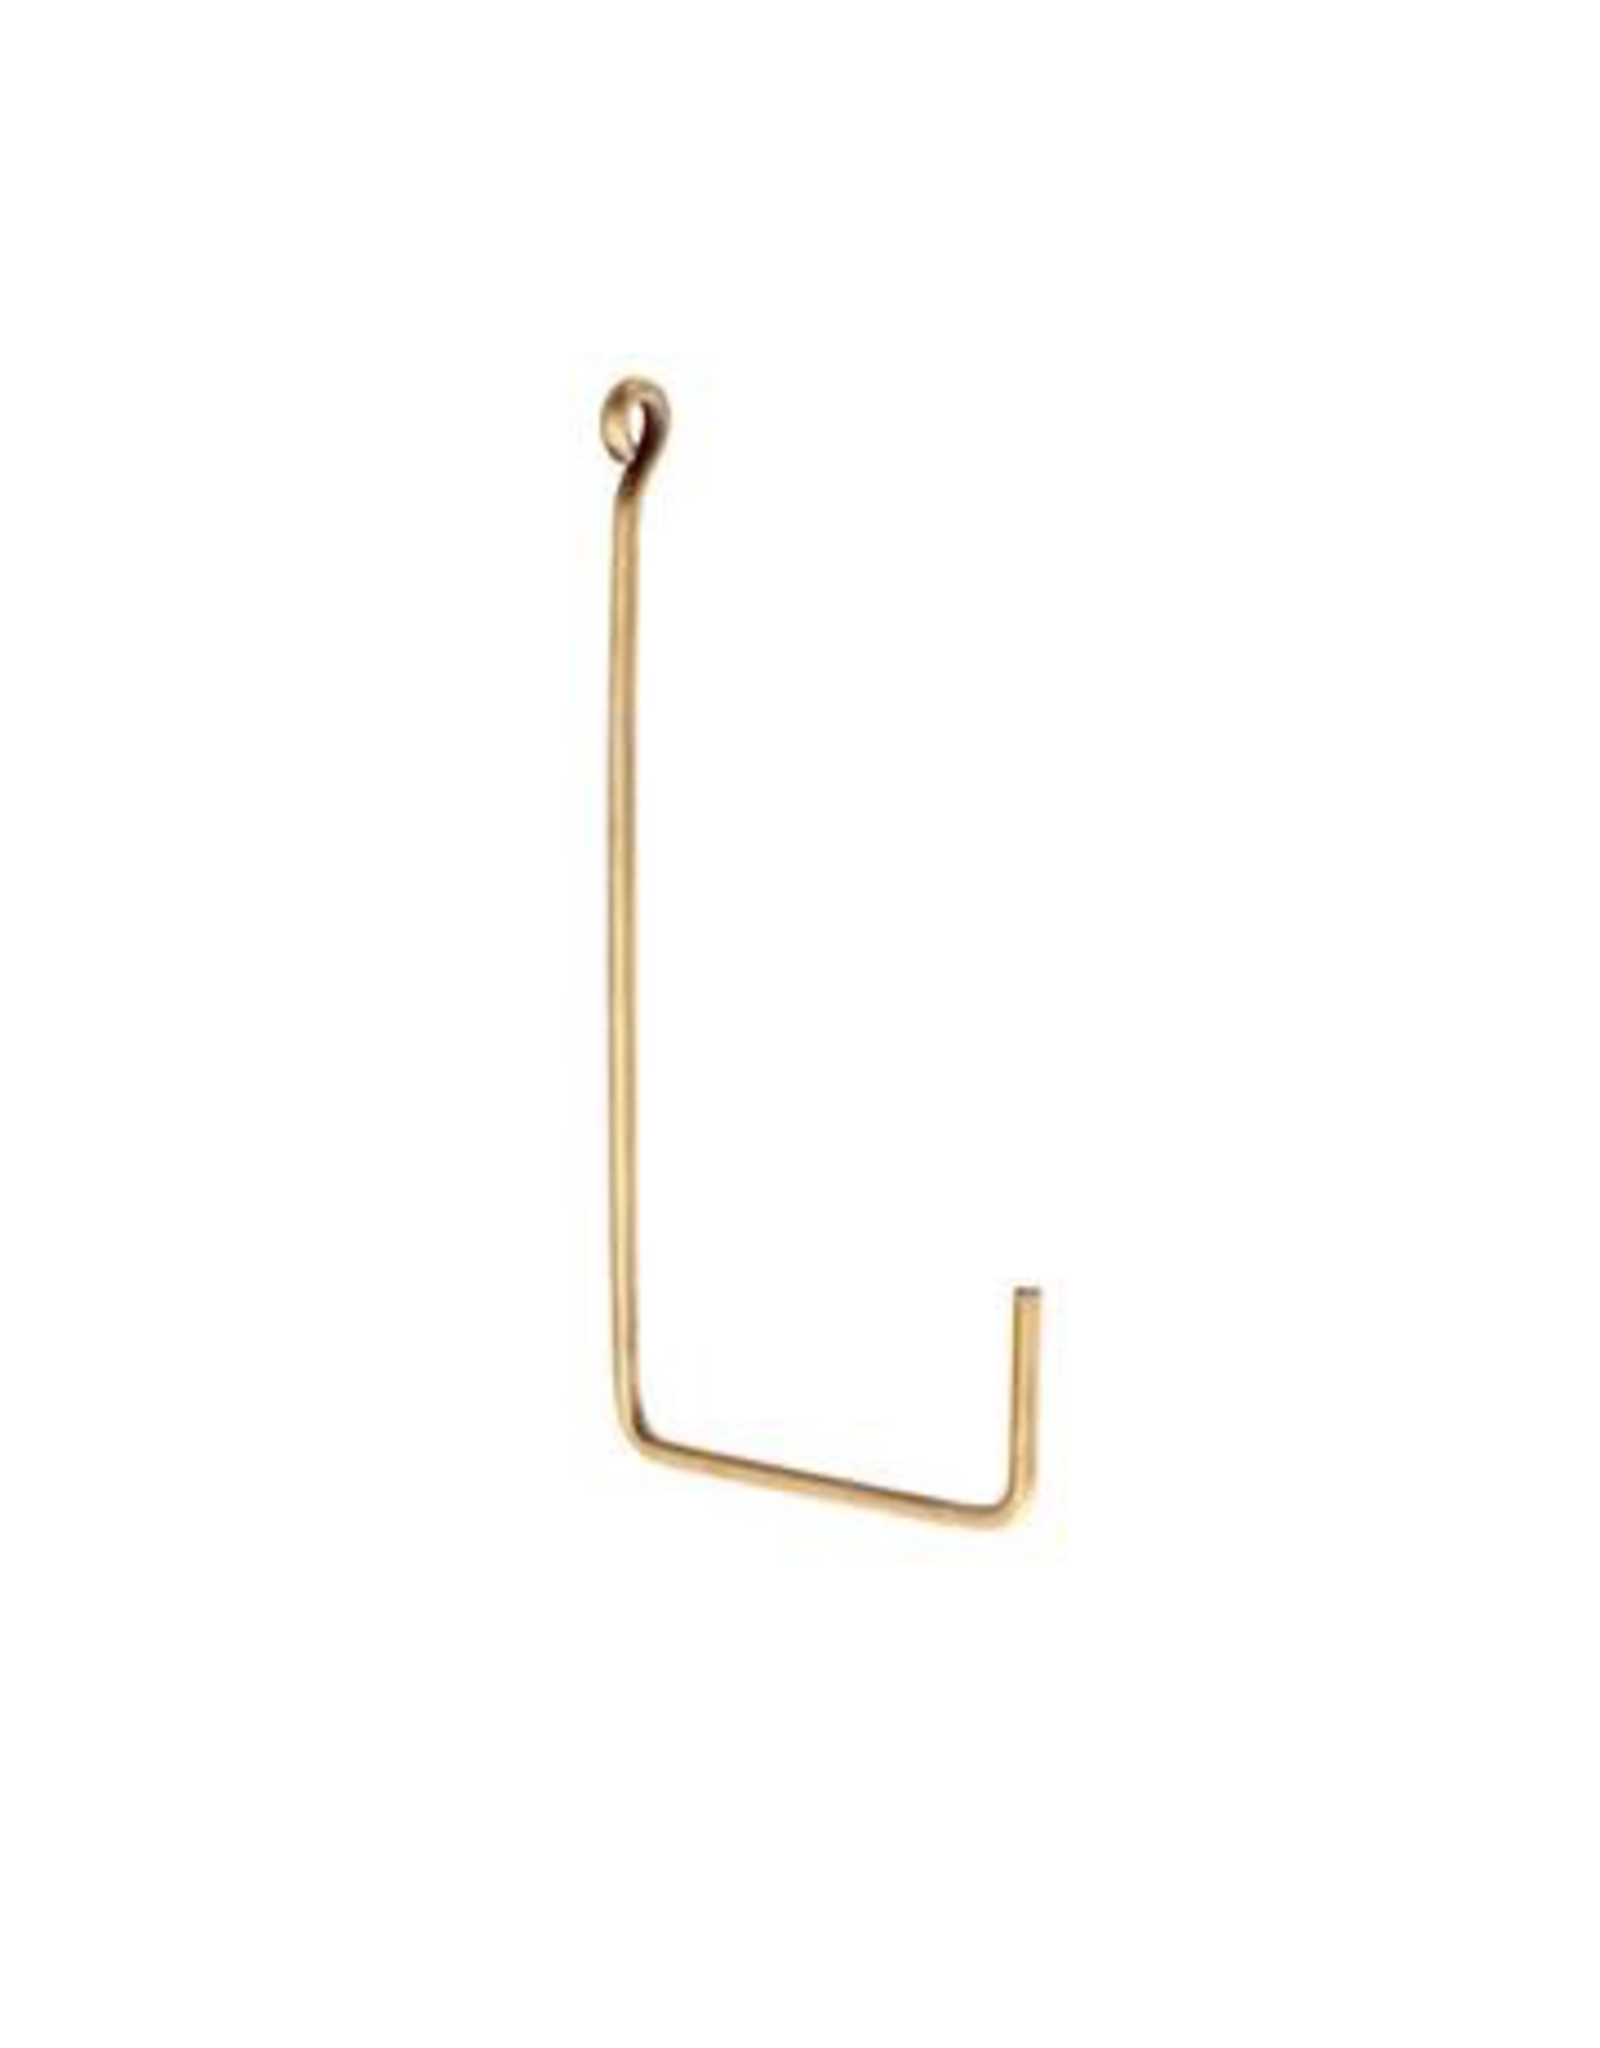 Large “L Shape” Single Brass Hook